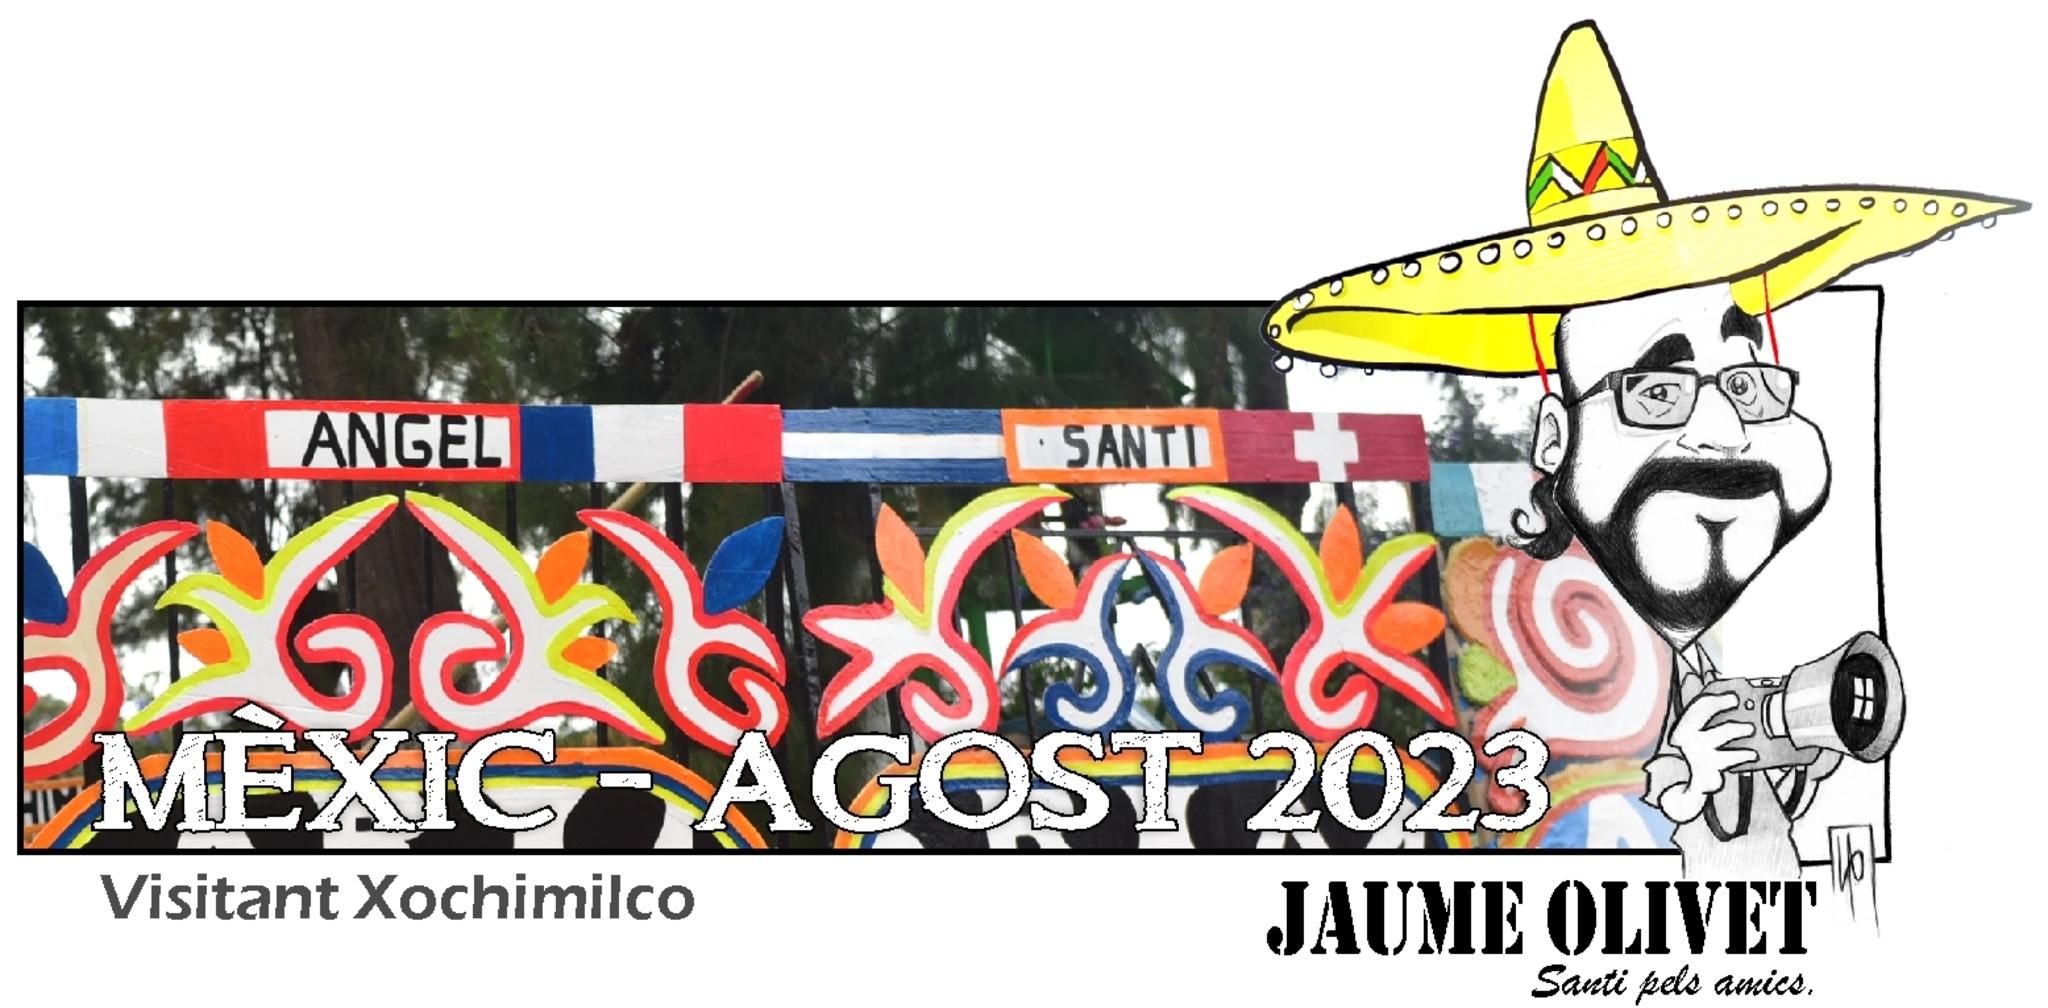  Jaume Olivet 2023